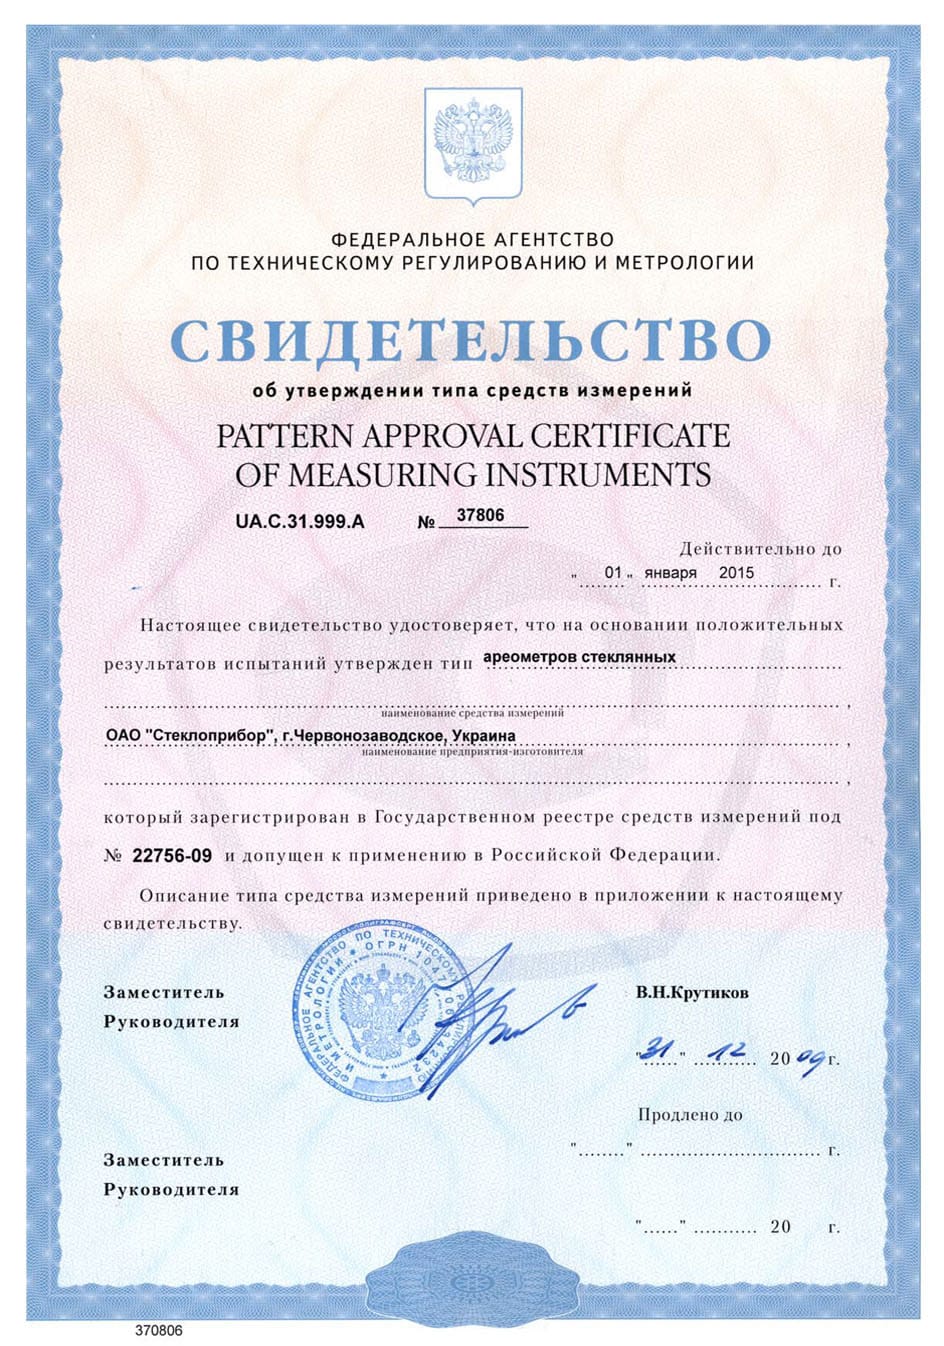 Сертификат на ареометры стеклянные